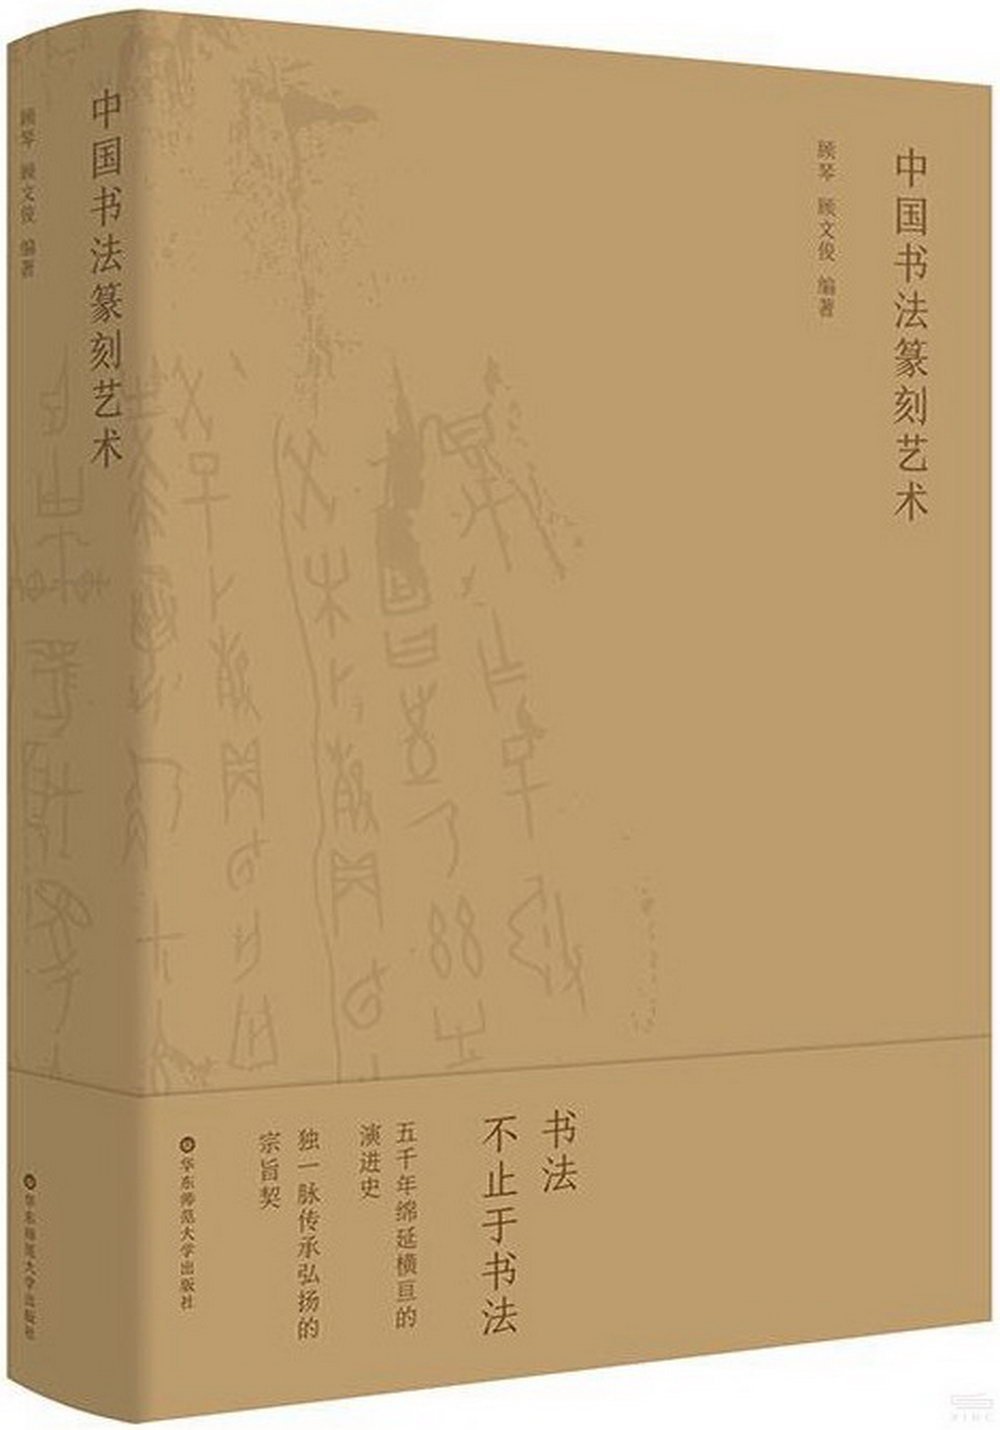 中國書法篆刻藝術